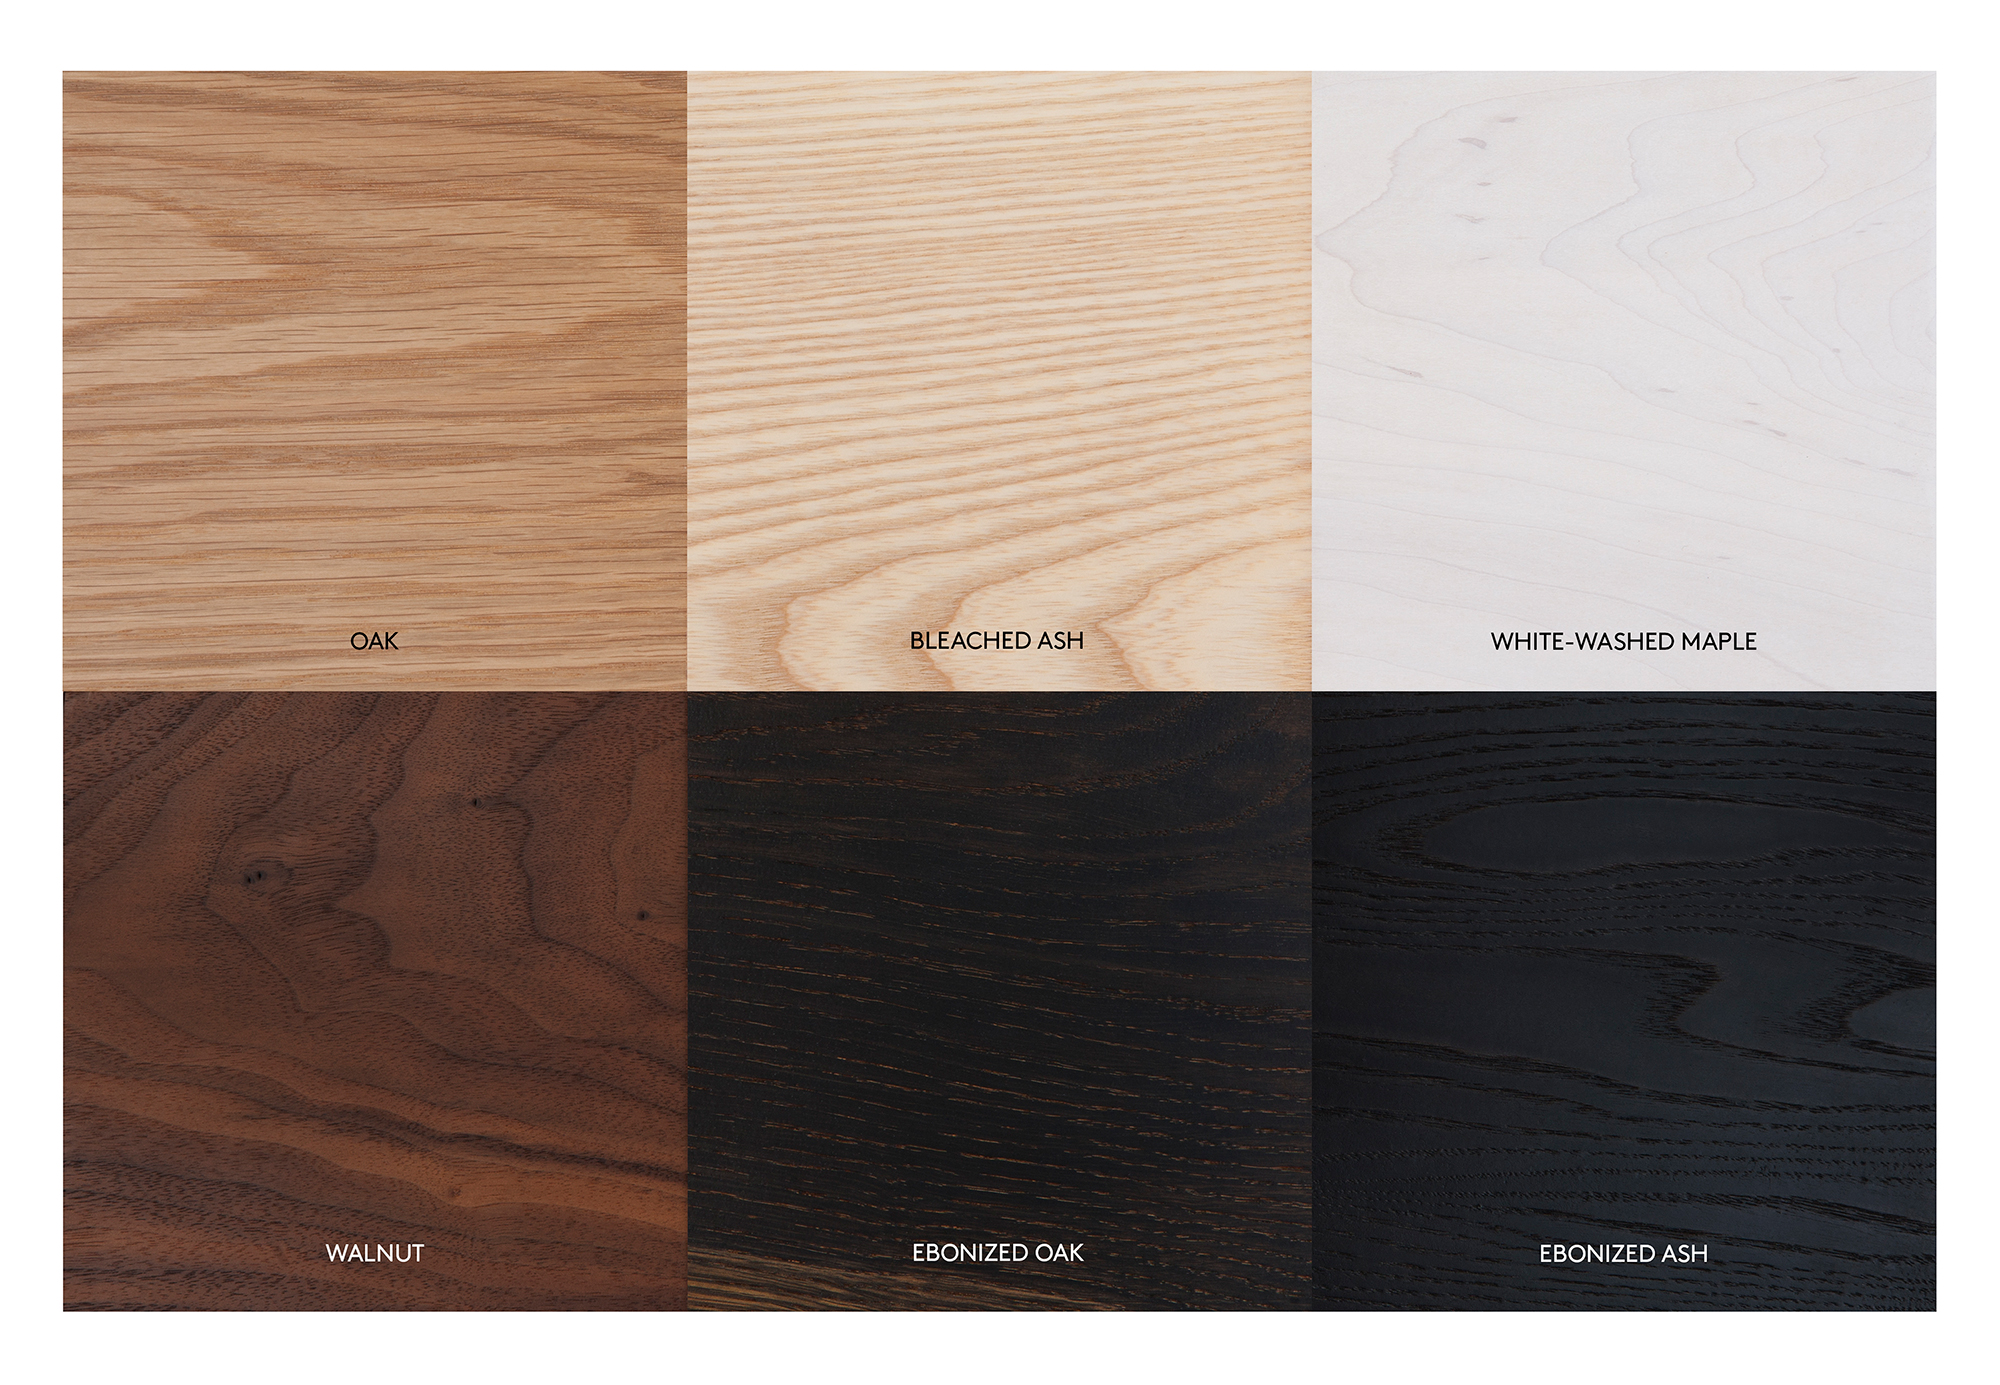 Ebonized Oak Laminate Flooring, Ebonized Hardwood Flooring